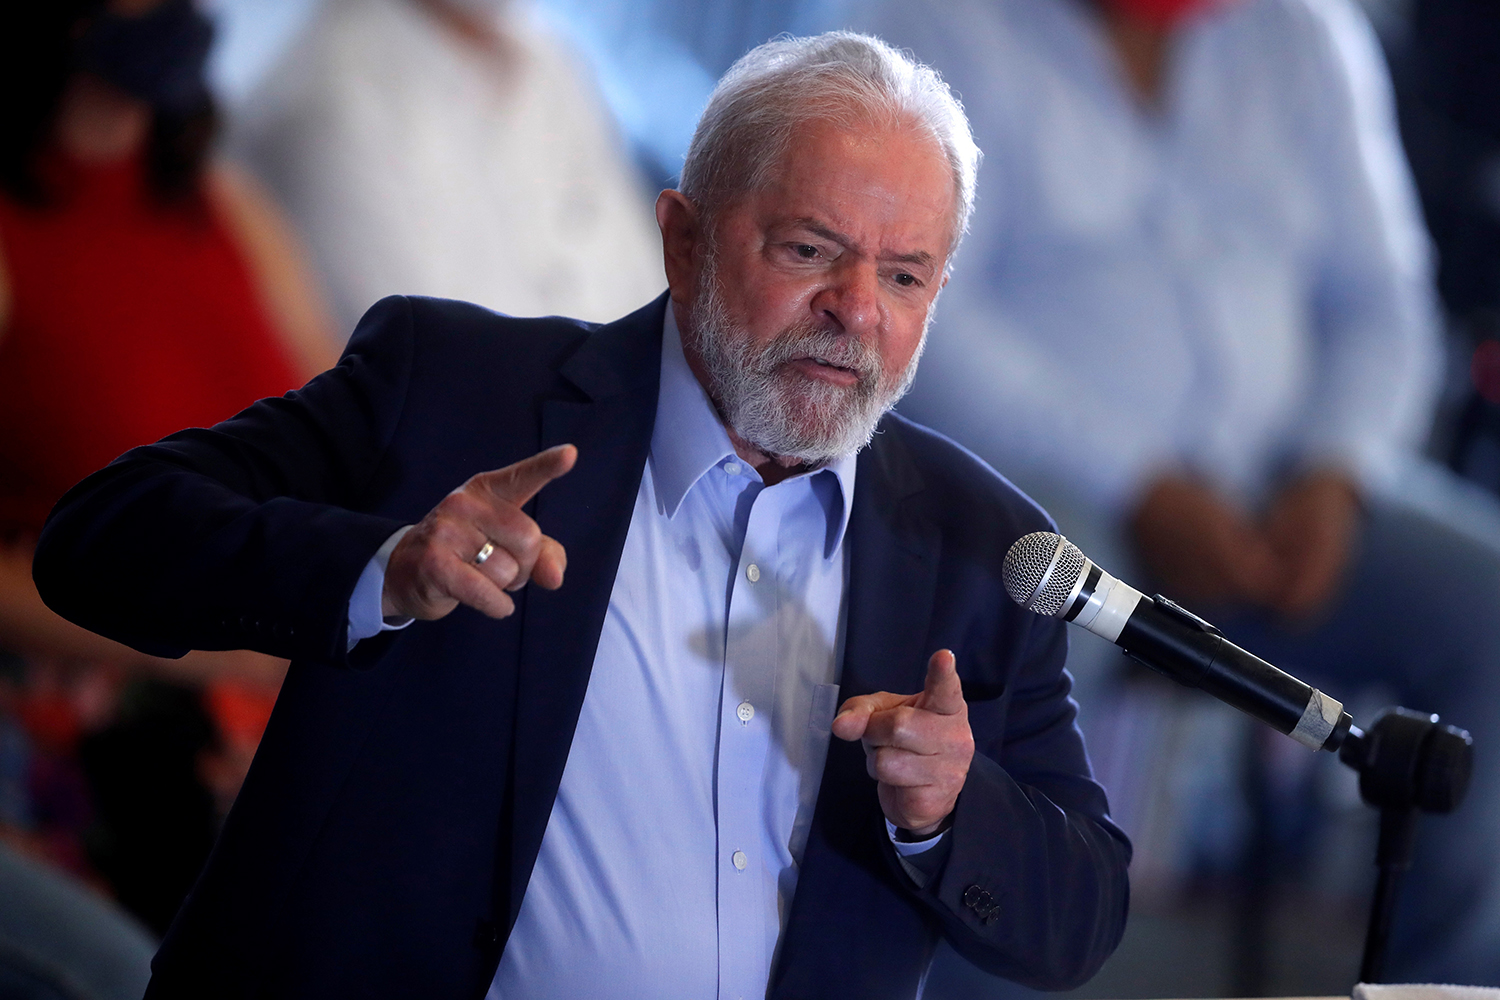 PGR recorre de decisão que anulou condenações de Lula na Lava-Jato | VEJA